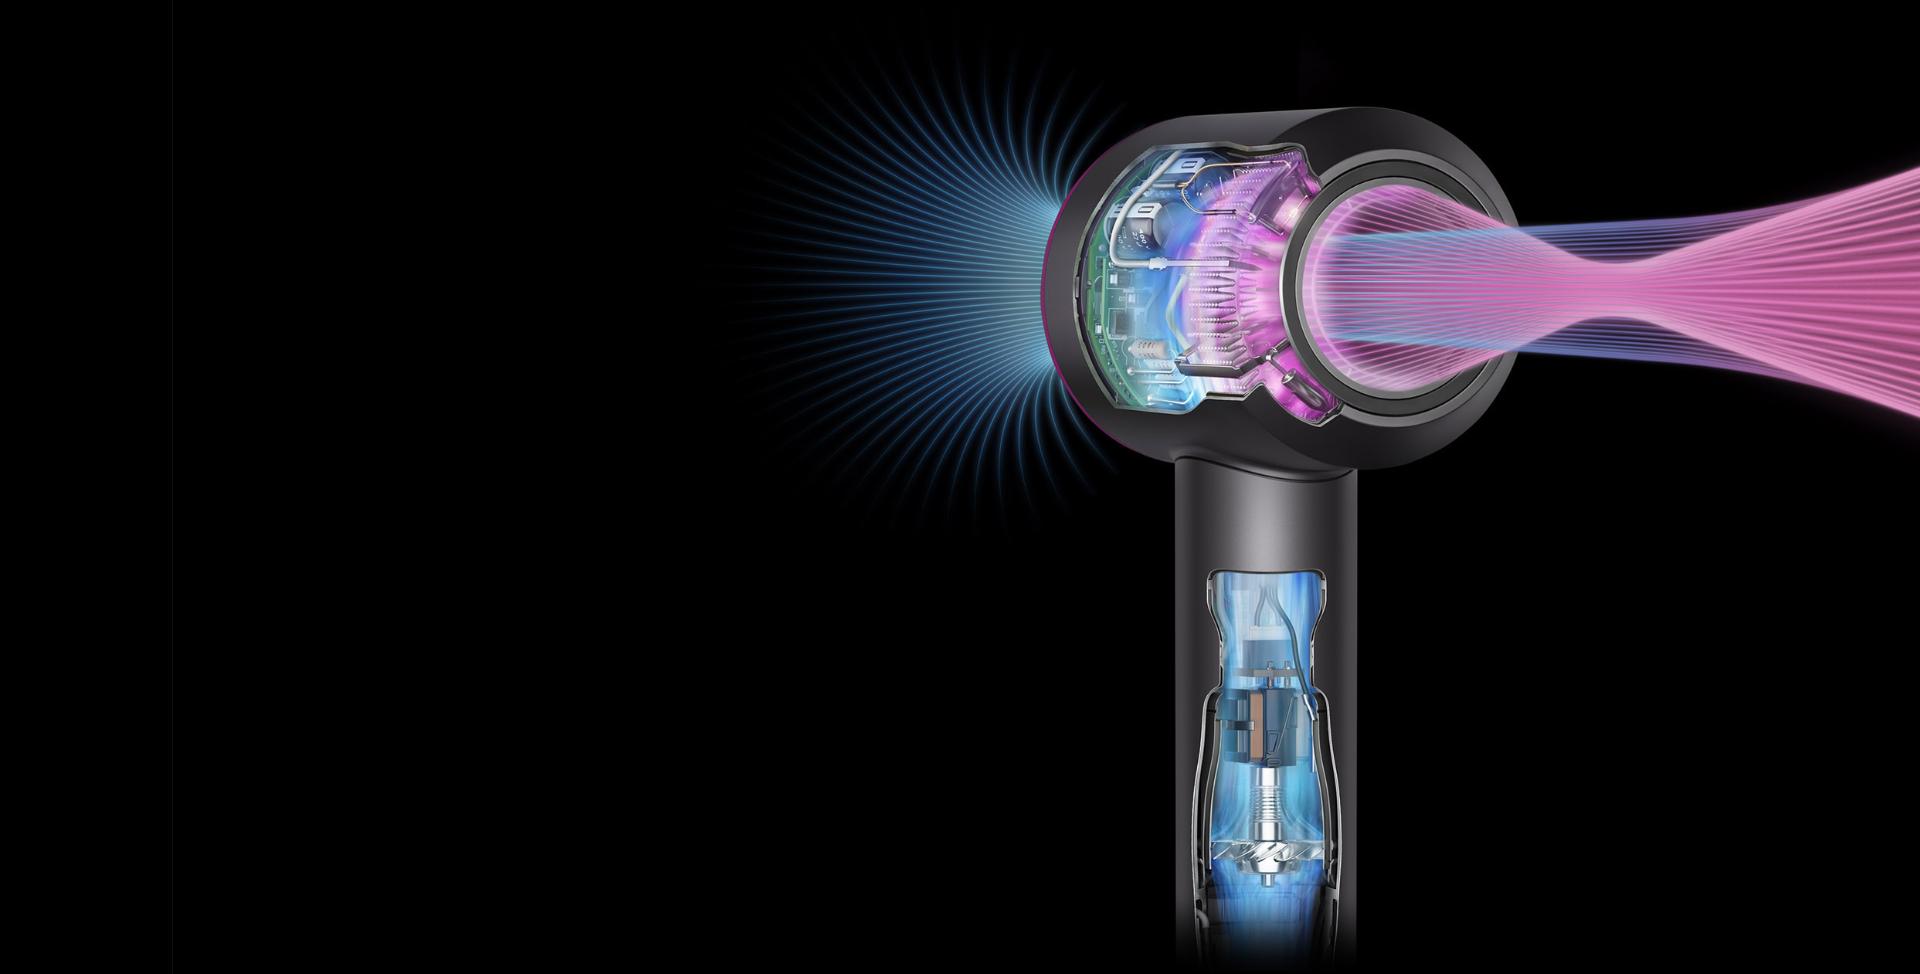 Supersonic saç kurutma makinesinin güçlü hava akımını ve akıllı ısı kontrolünü gösteren kesit görünümleri.